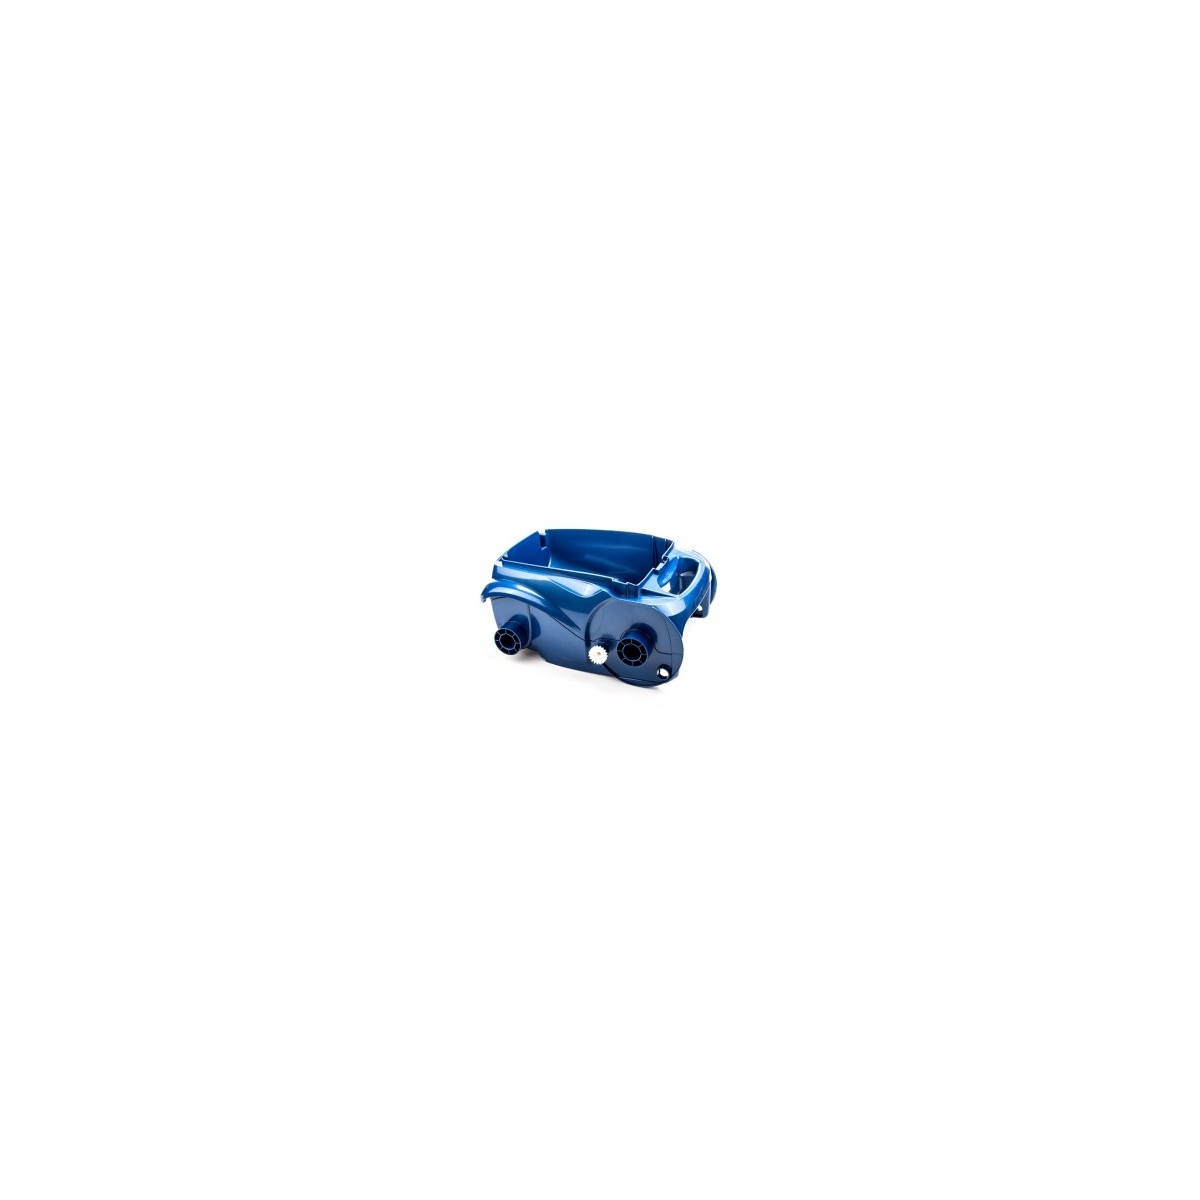 Cuerpo completo Zodiac Vortex 2WD II azul R0589100